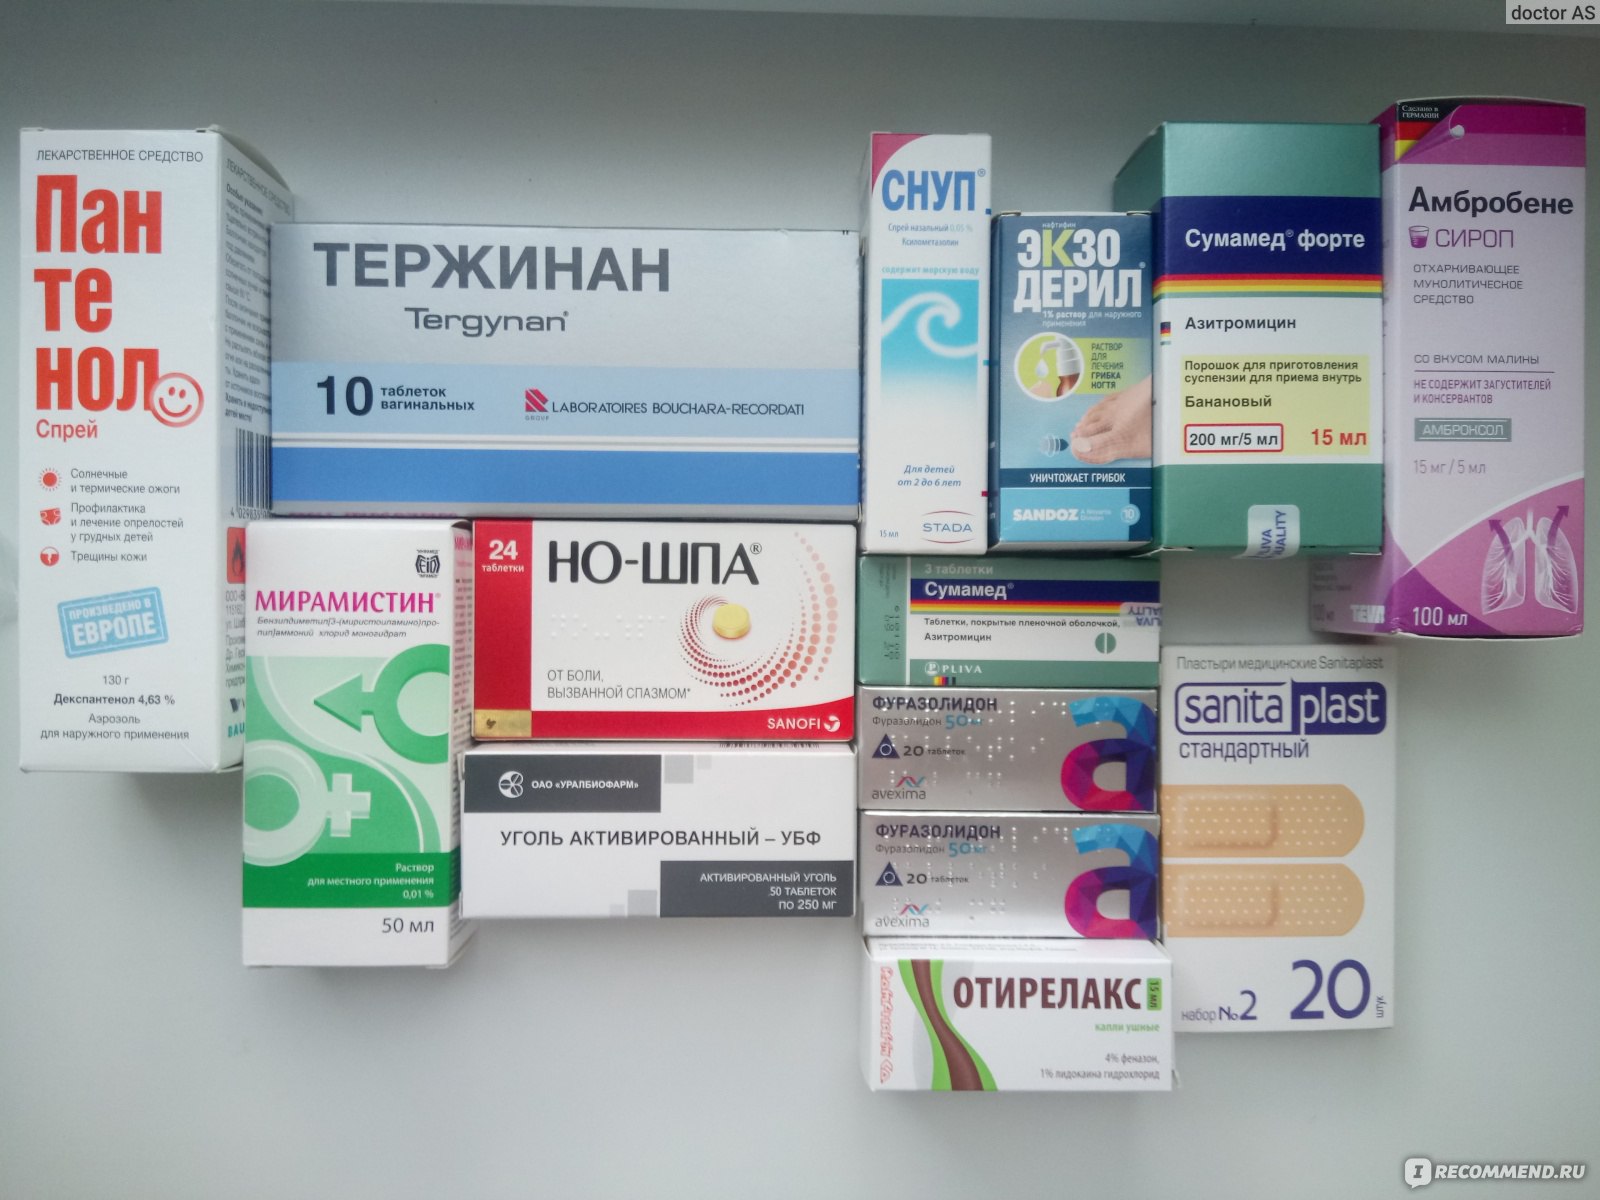 Купить лекарство в интернете в москве